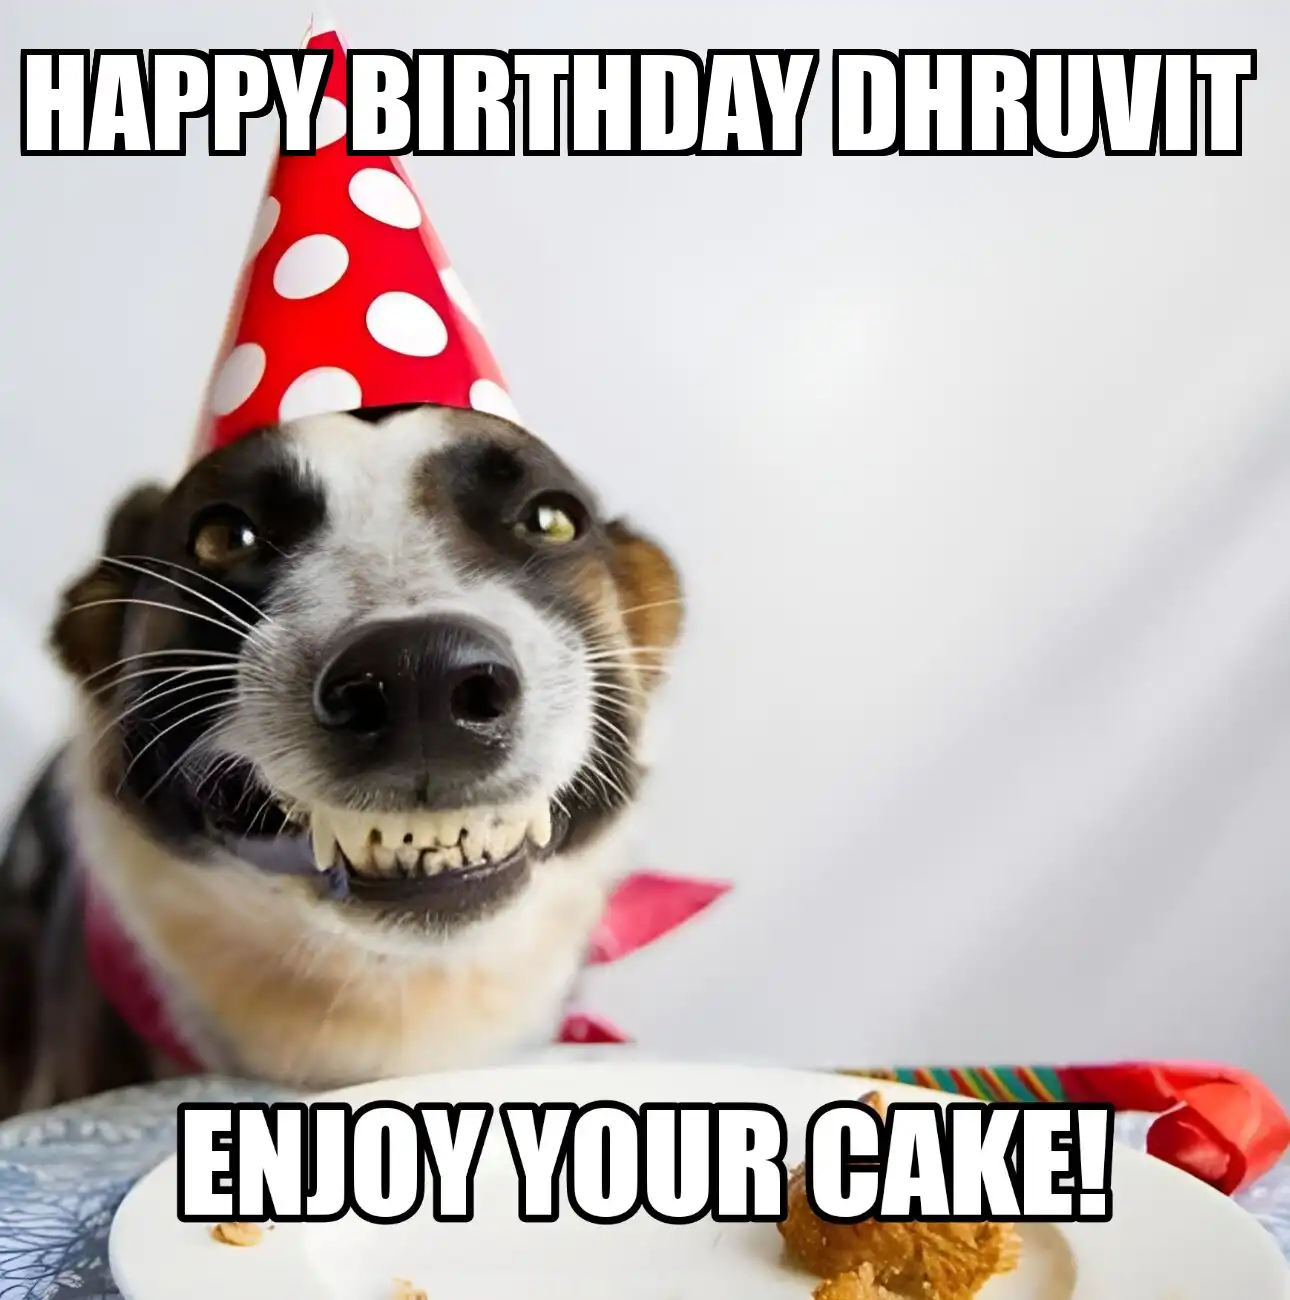 Happy Birthday Dhruvit Enjoy Your Cake Dog Meme